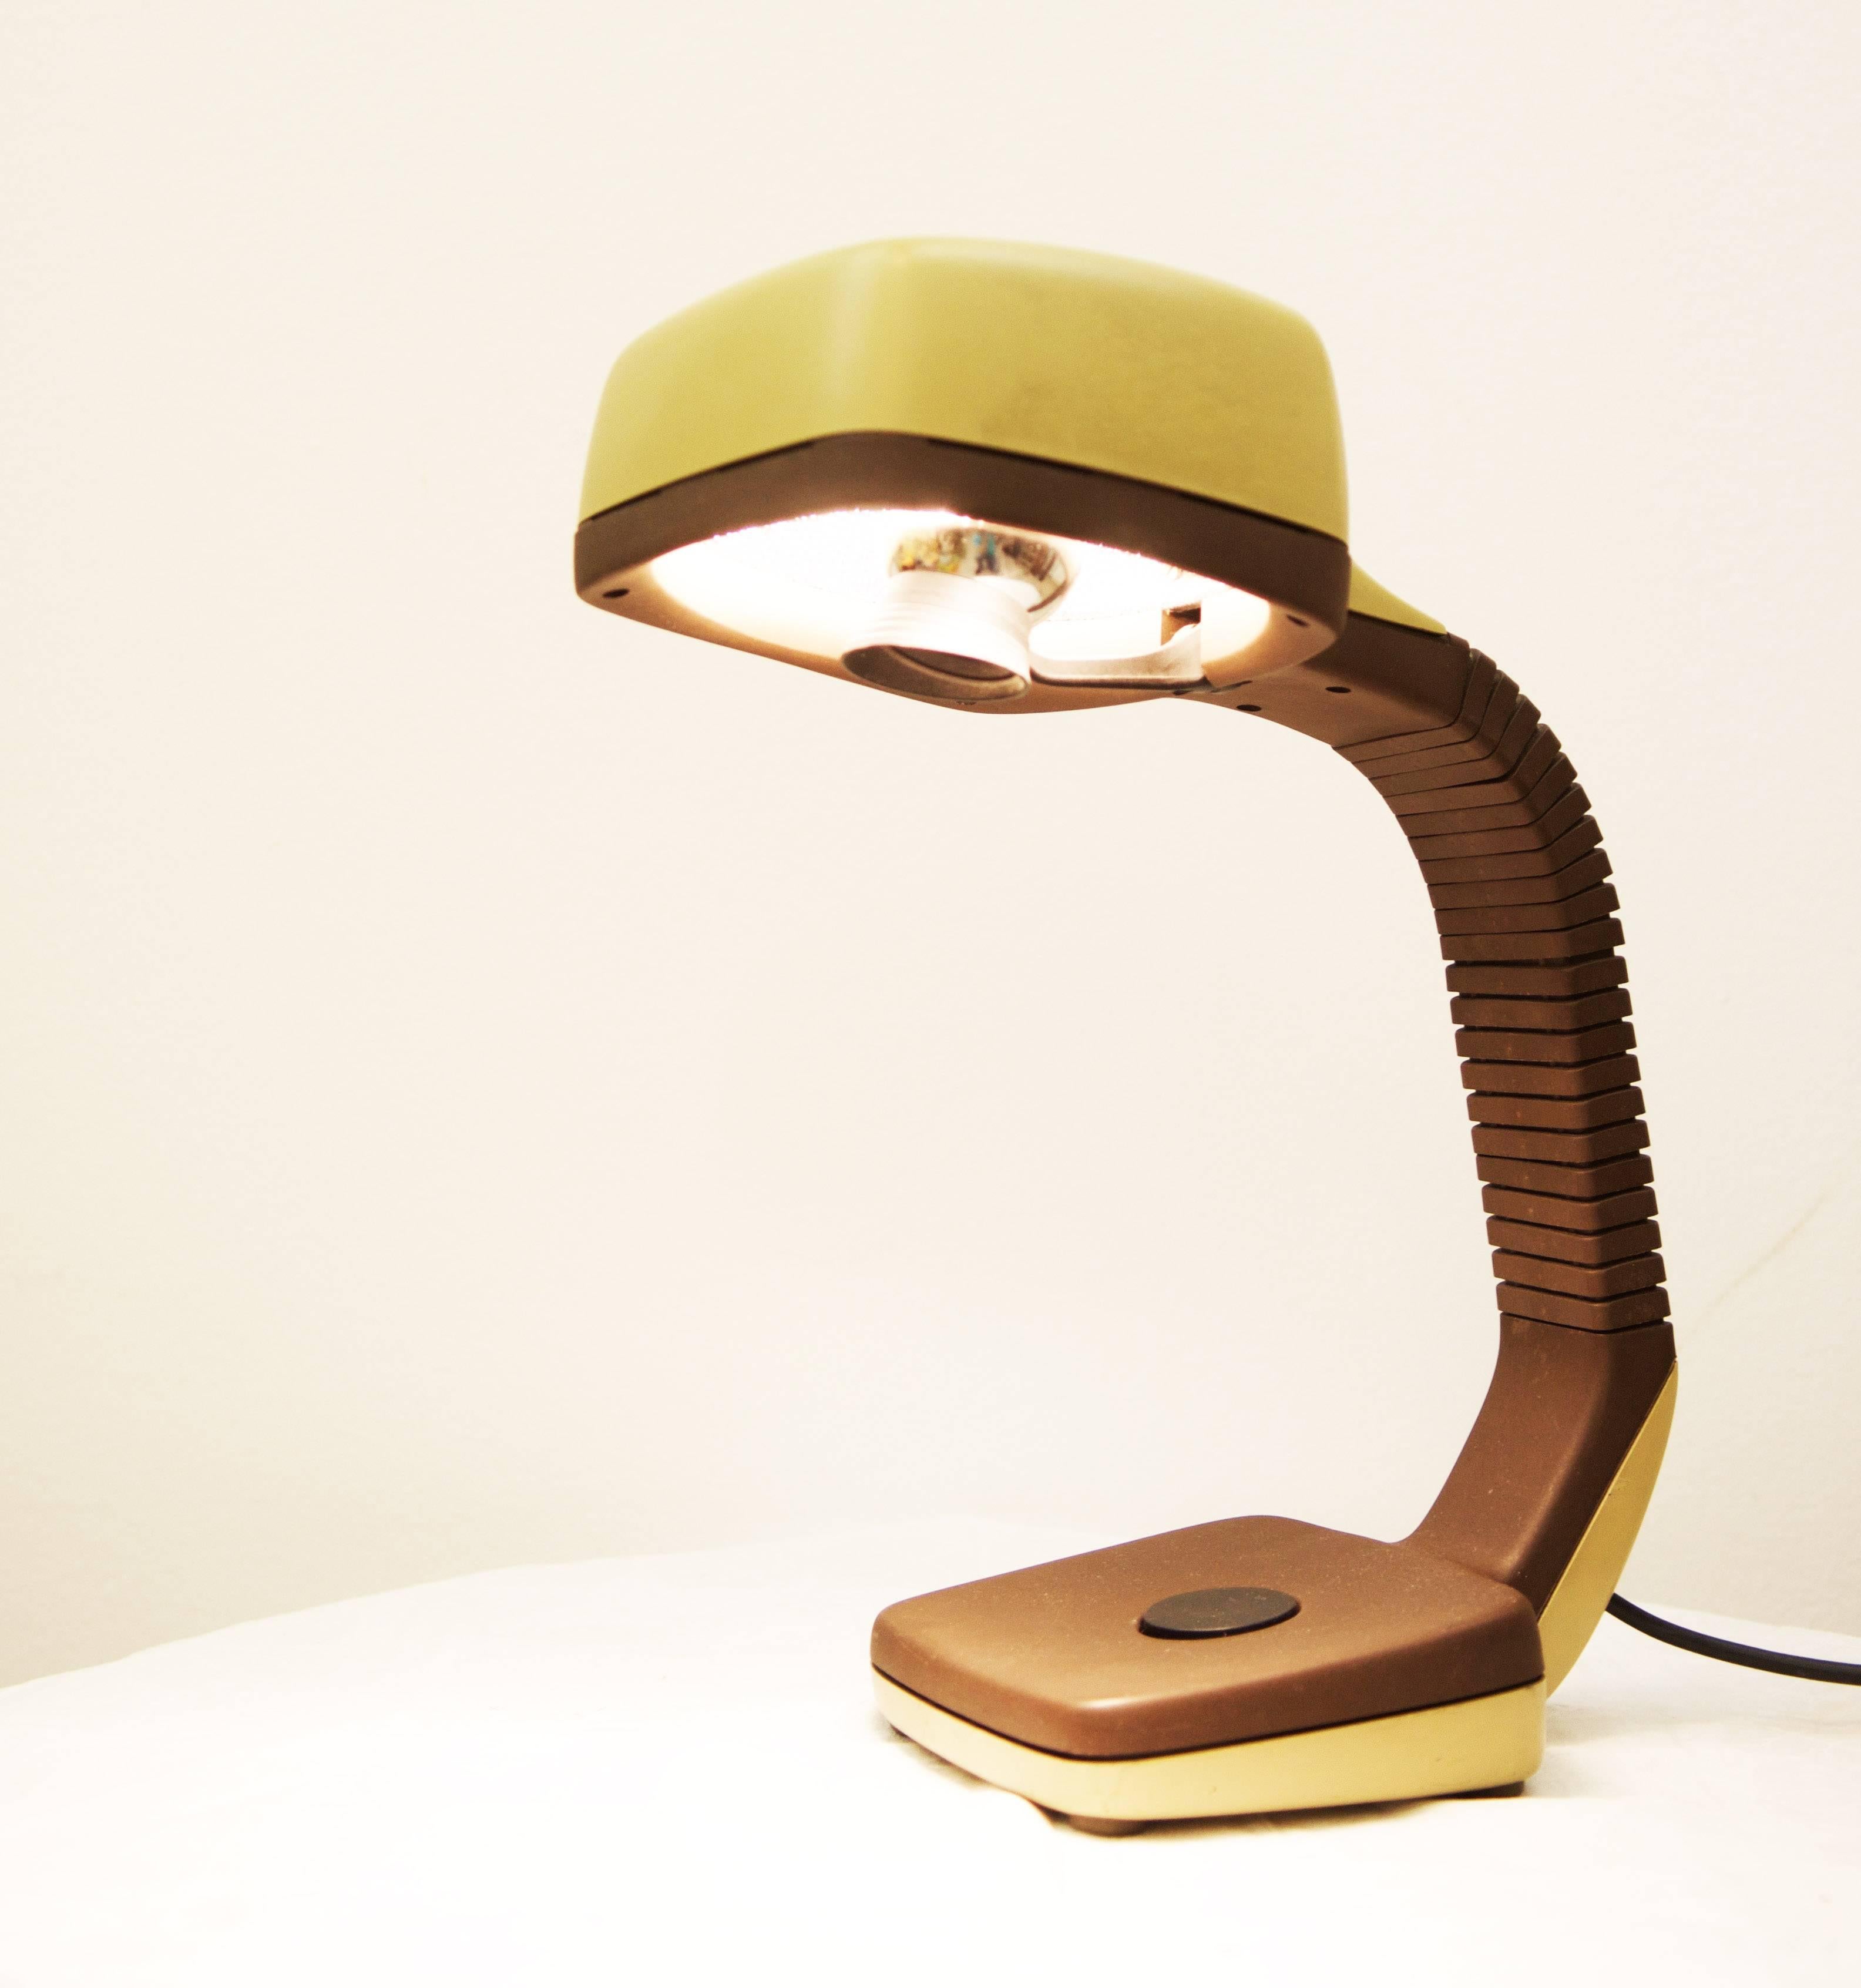 Lampe de bureau de Hoffmeister des années 70/80
Lampe col de cygne élégante avec réflecteur sophistiqué et ampoule E14 :
Grâce au réflecteur en amont de l'ampoule, on obtient un effet de spot supplémentaire !
Le col de cygne permet un alignement